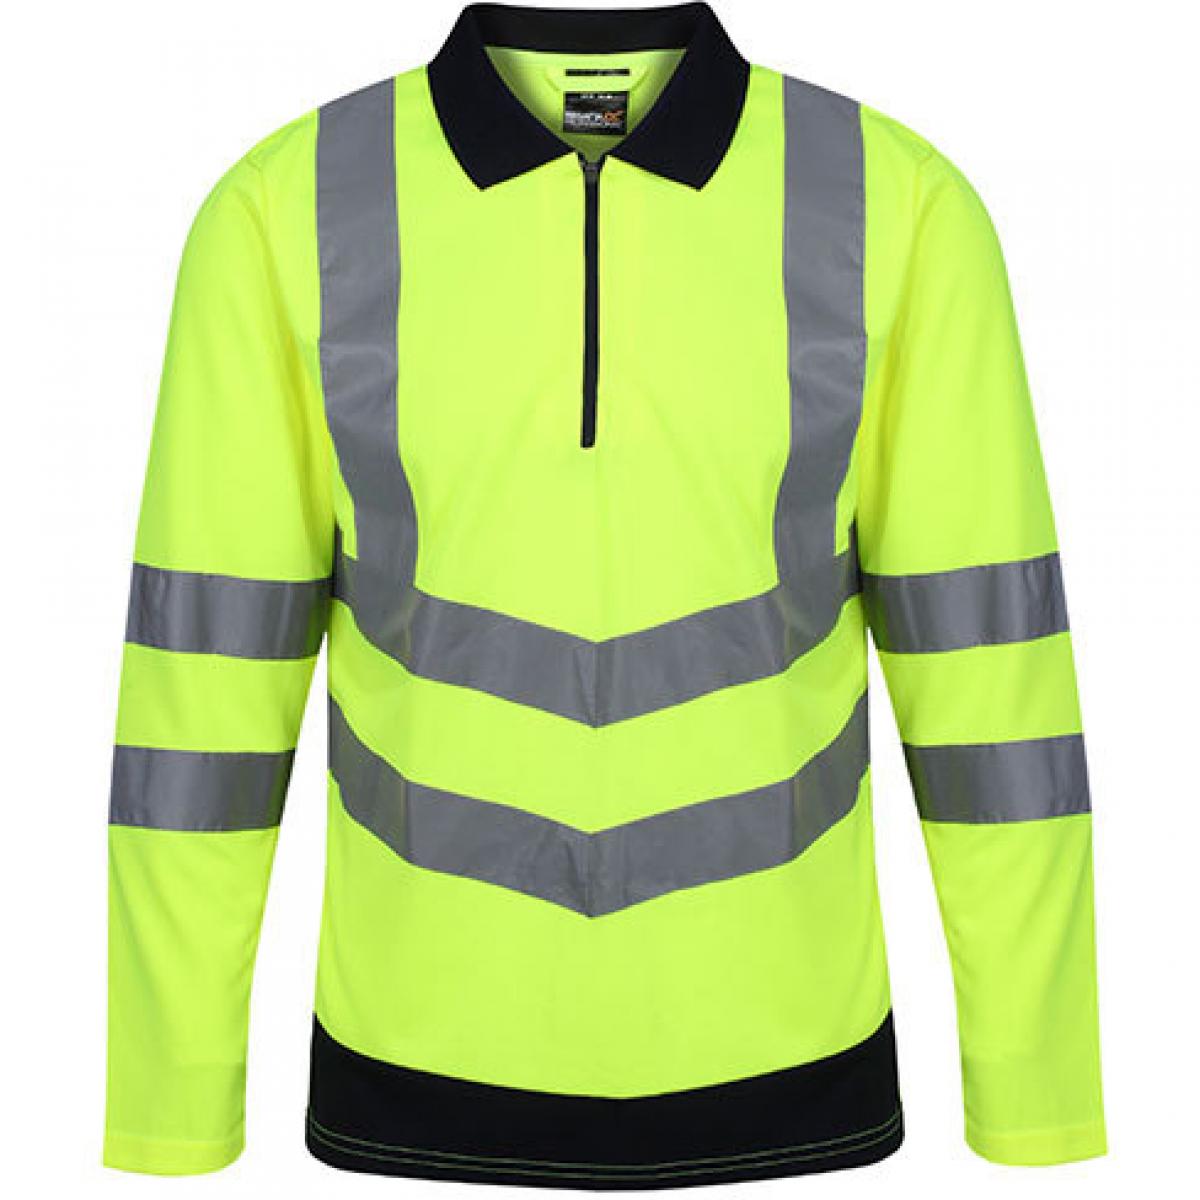 Hersteller: Regatta High Visibility Herstellernummer: TRS192 Artikelbezeichnung: Pro Hi-Vis Long Sleeve Polo Shirt - Arbeitspolo Farbe: Yellow/Navy